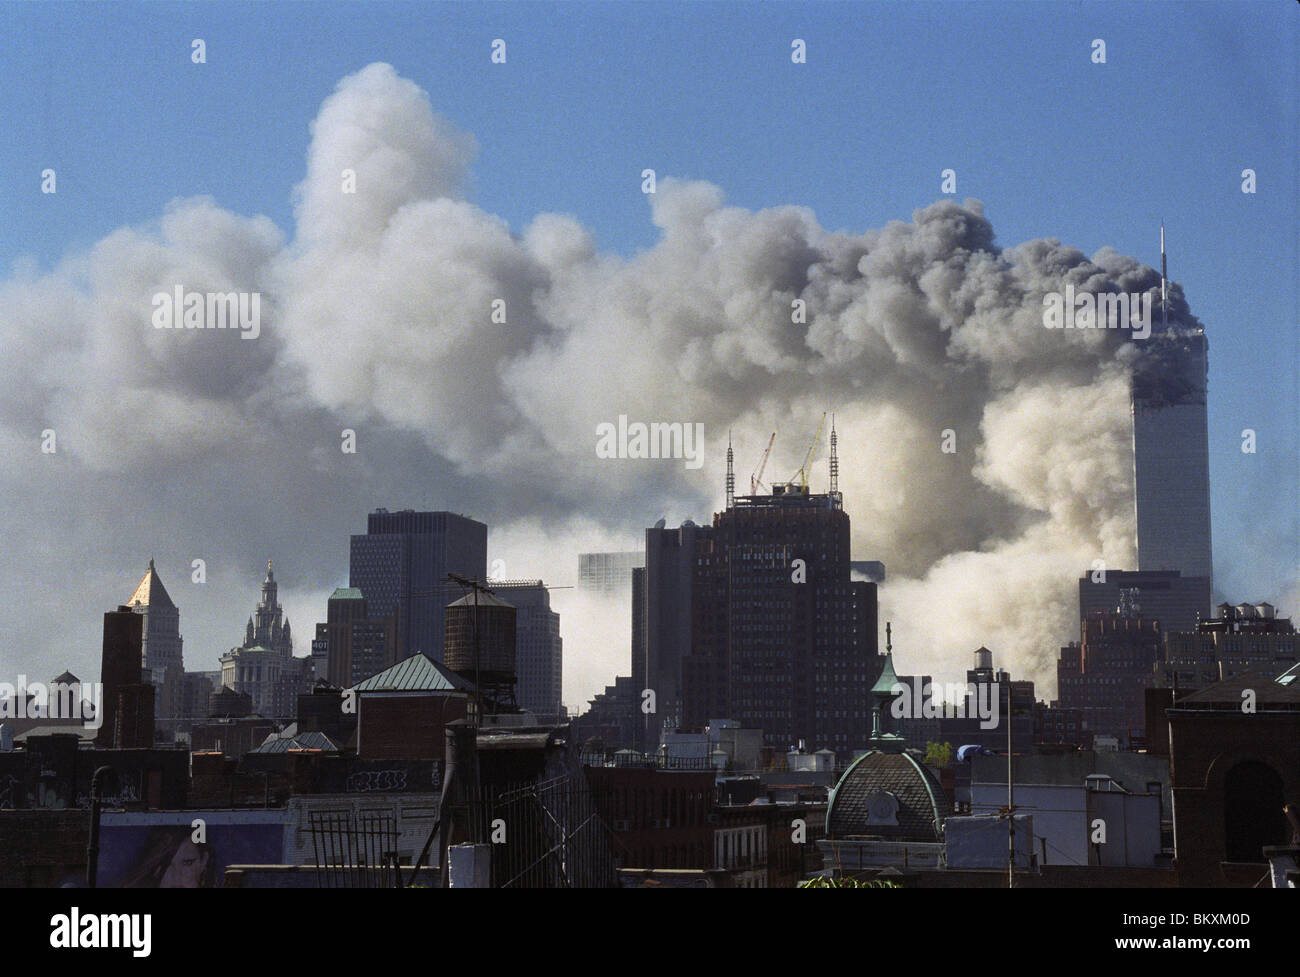 Am 09:59 stürzte der Südturm, 2 World Trade Center, nachdem er von einem Flugzeug getroffen. © Stacy Walsh Rosenstock/Alamy Stockfoto